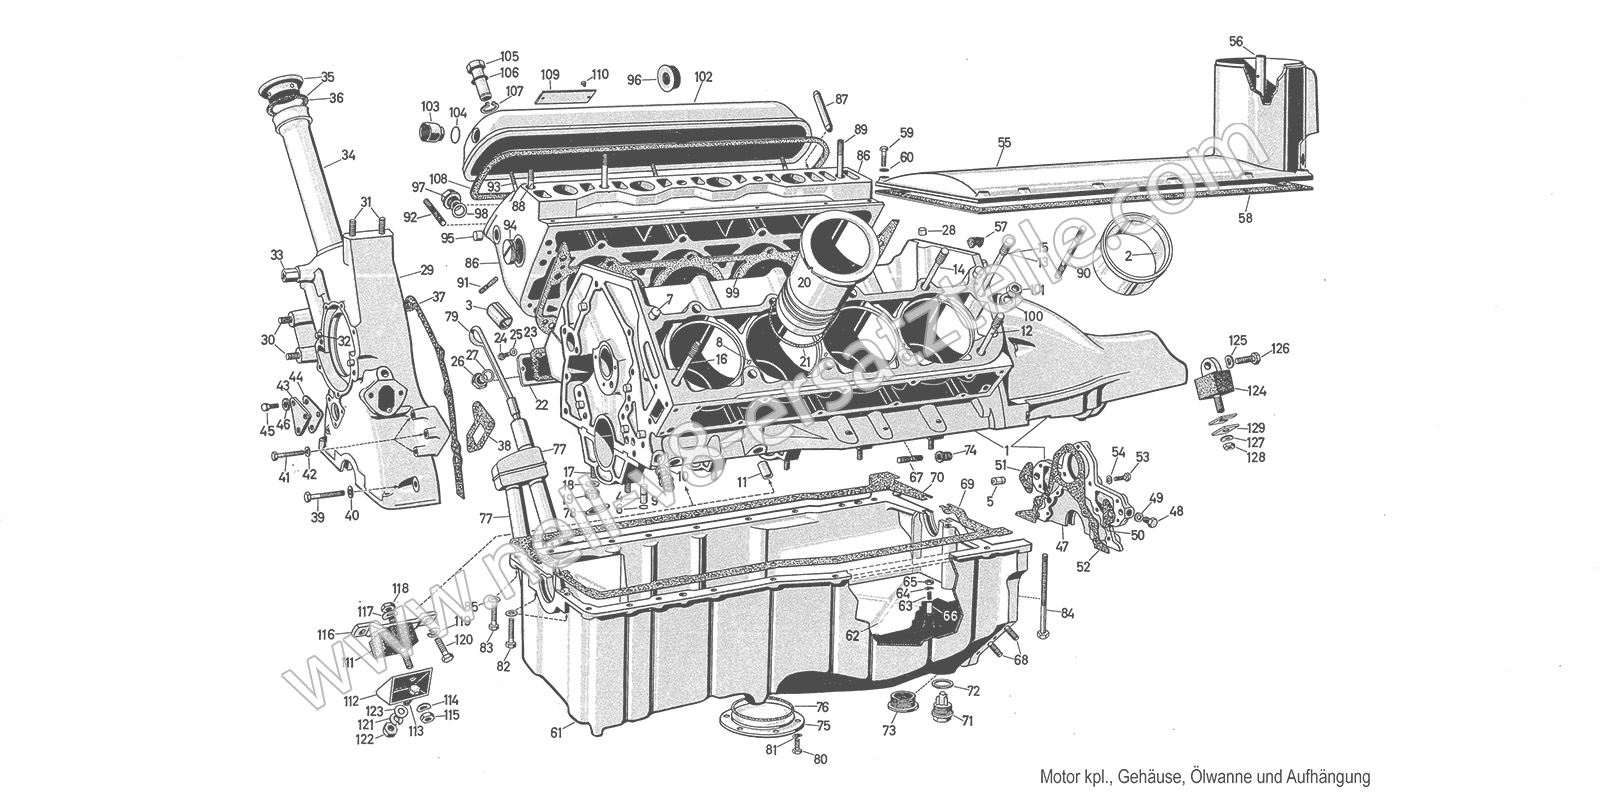 Ersatzteile Motor kpl. Gehäuse, Ölwanne und Aufhängung